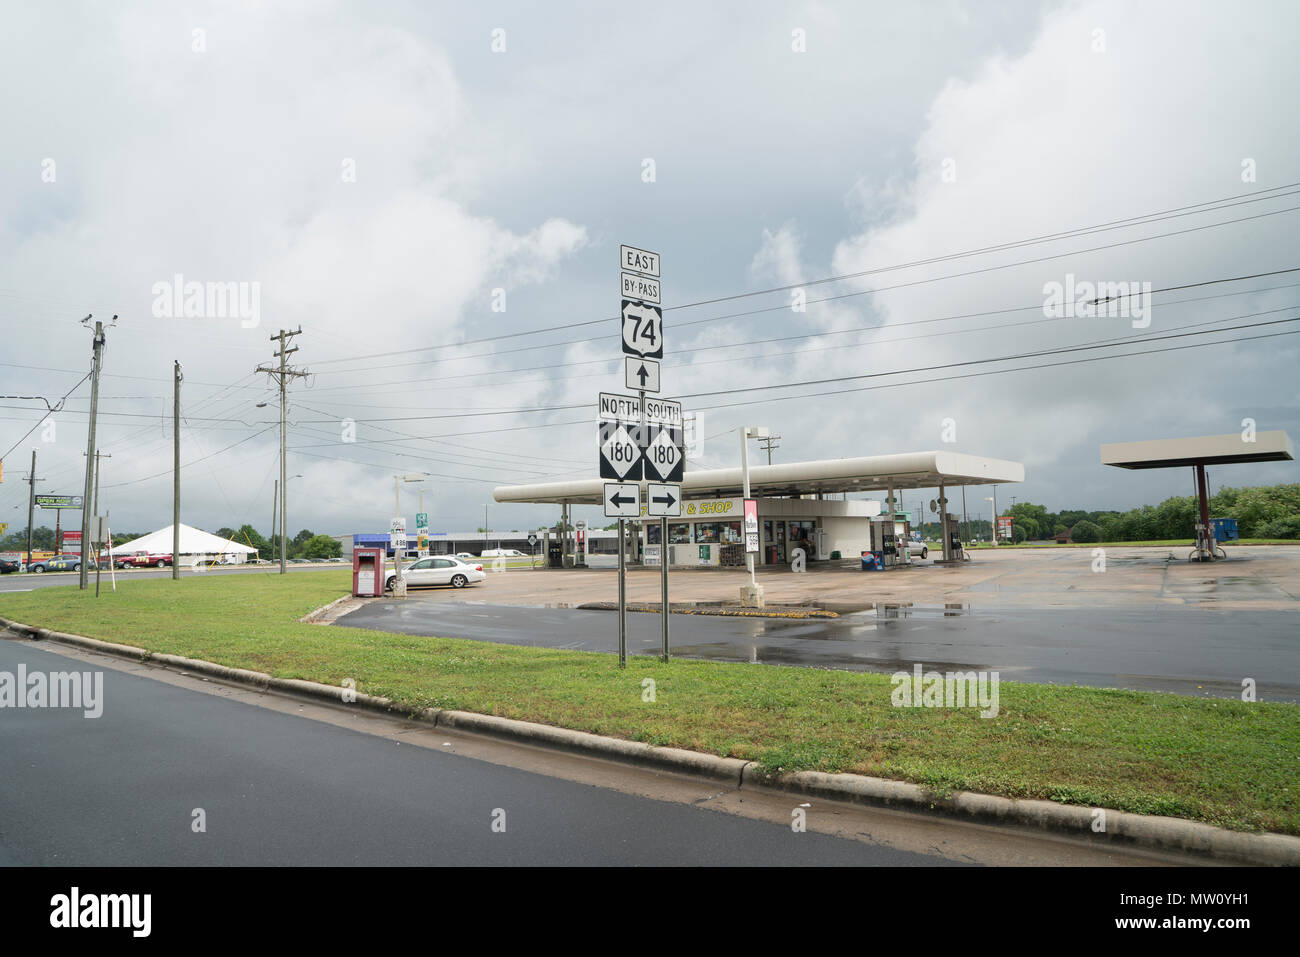 Eine Tankstelle befindet sich direkt neben der Autobahn in Shelby, einem ländlichen Teil von Nord Carolina, an einem regnerischen Tag im späten Frühjahr. Stockfoto